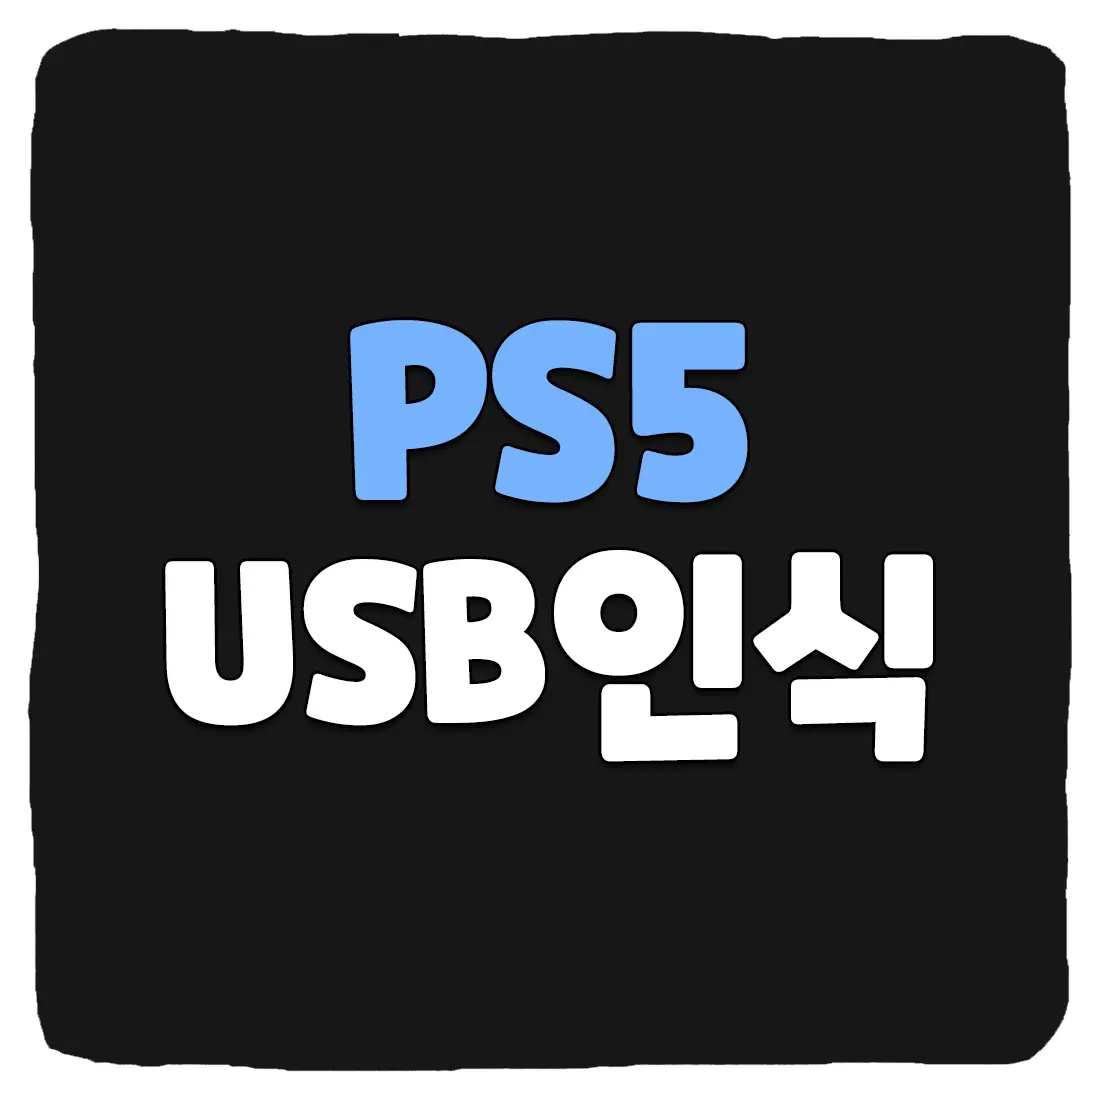 PS5 USB 인식 안될 때 해결 방법